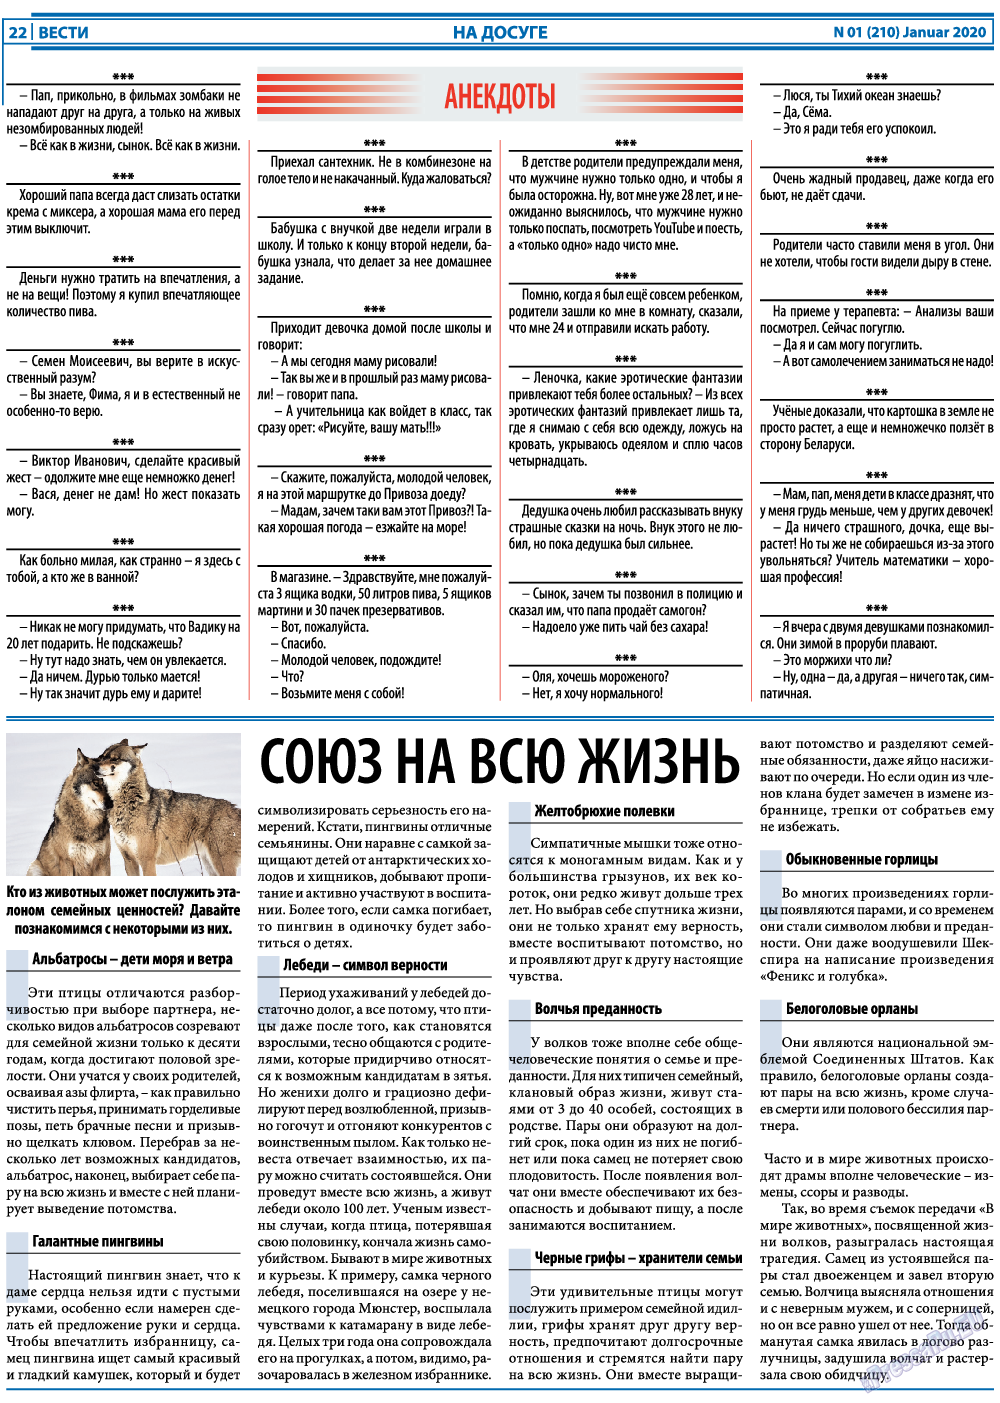 Вести, газета. 2020 №1 стр.22